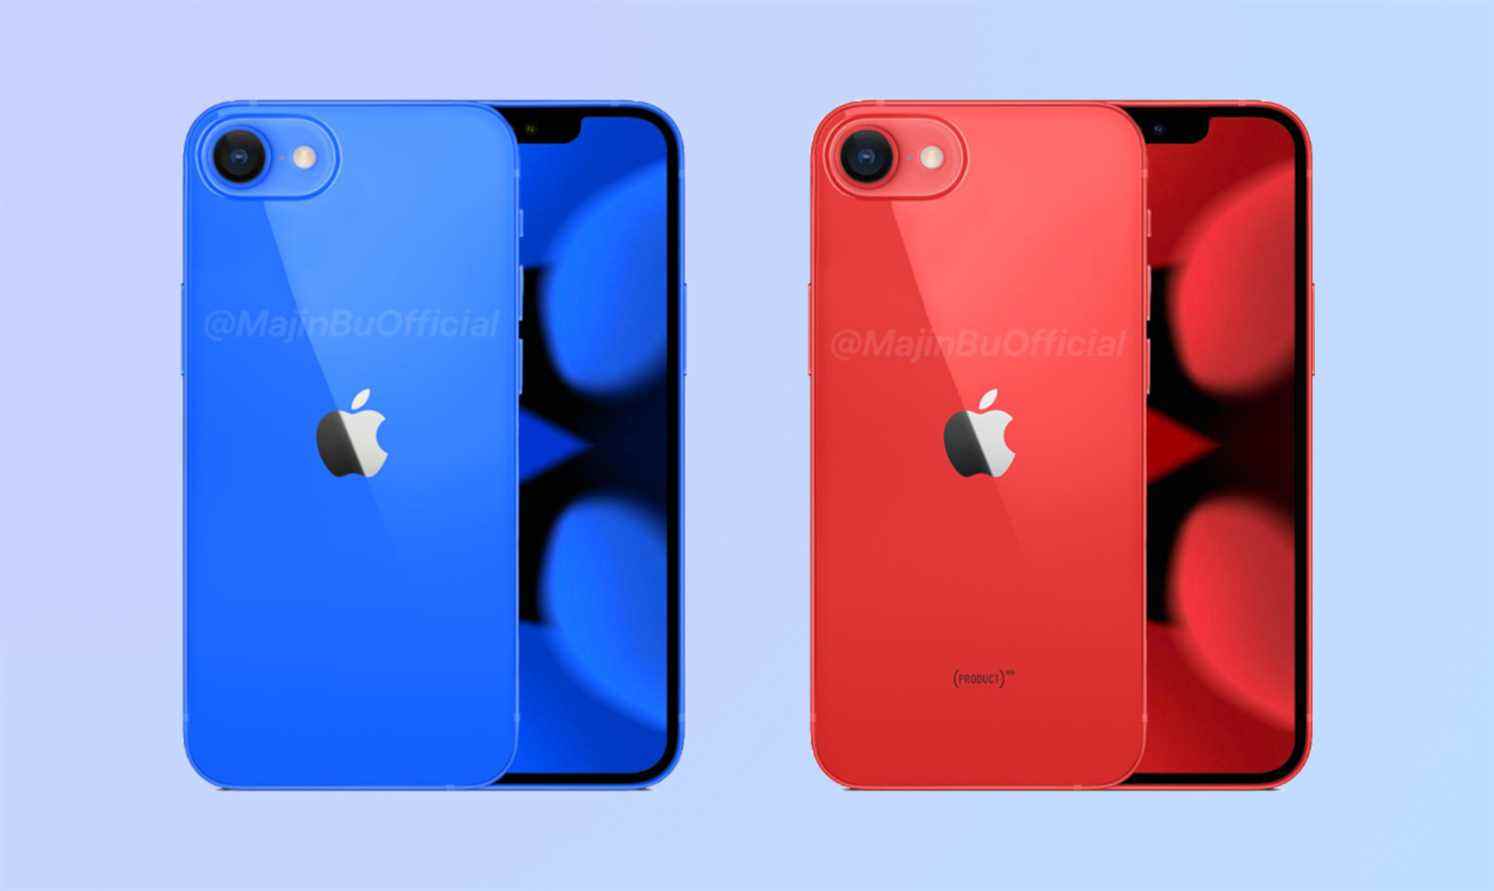 La rumeur veut que l'iPhone SE 3 rende en bleu et rouge